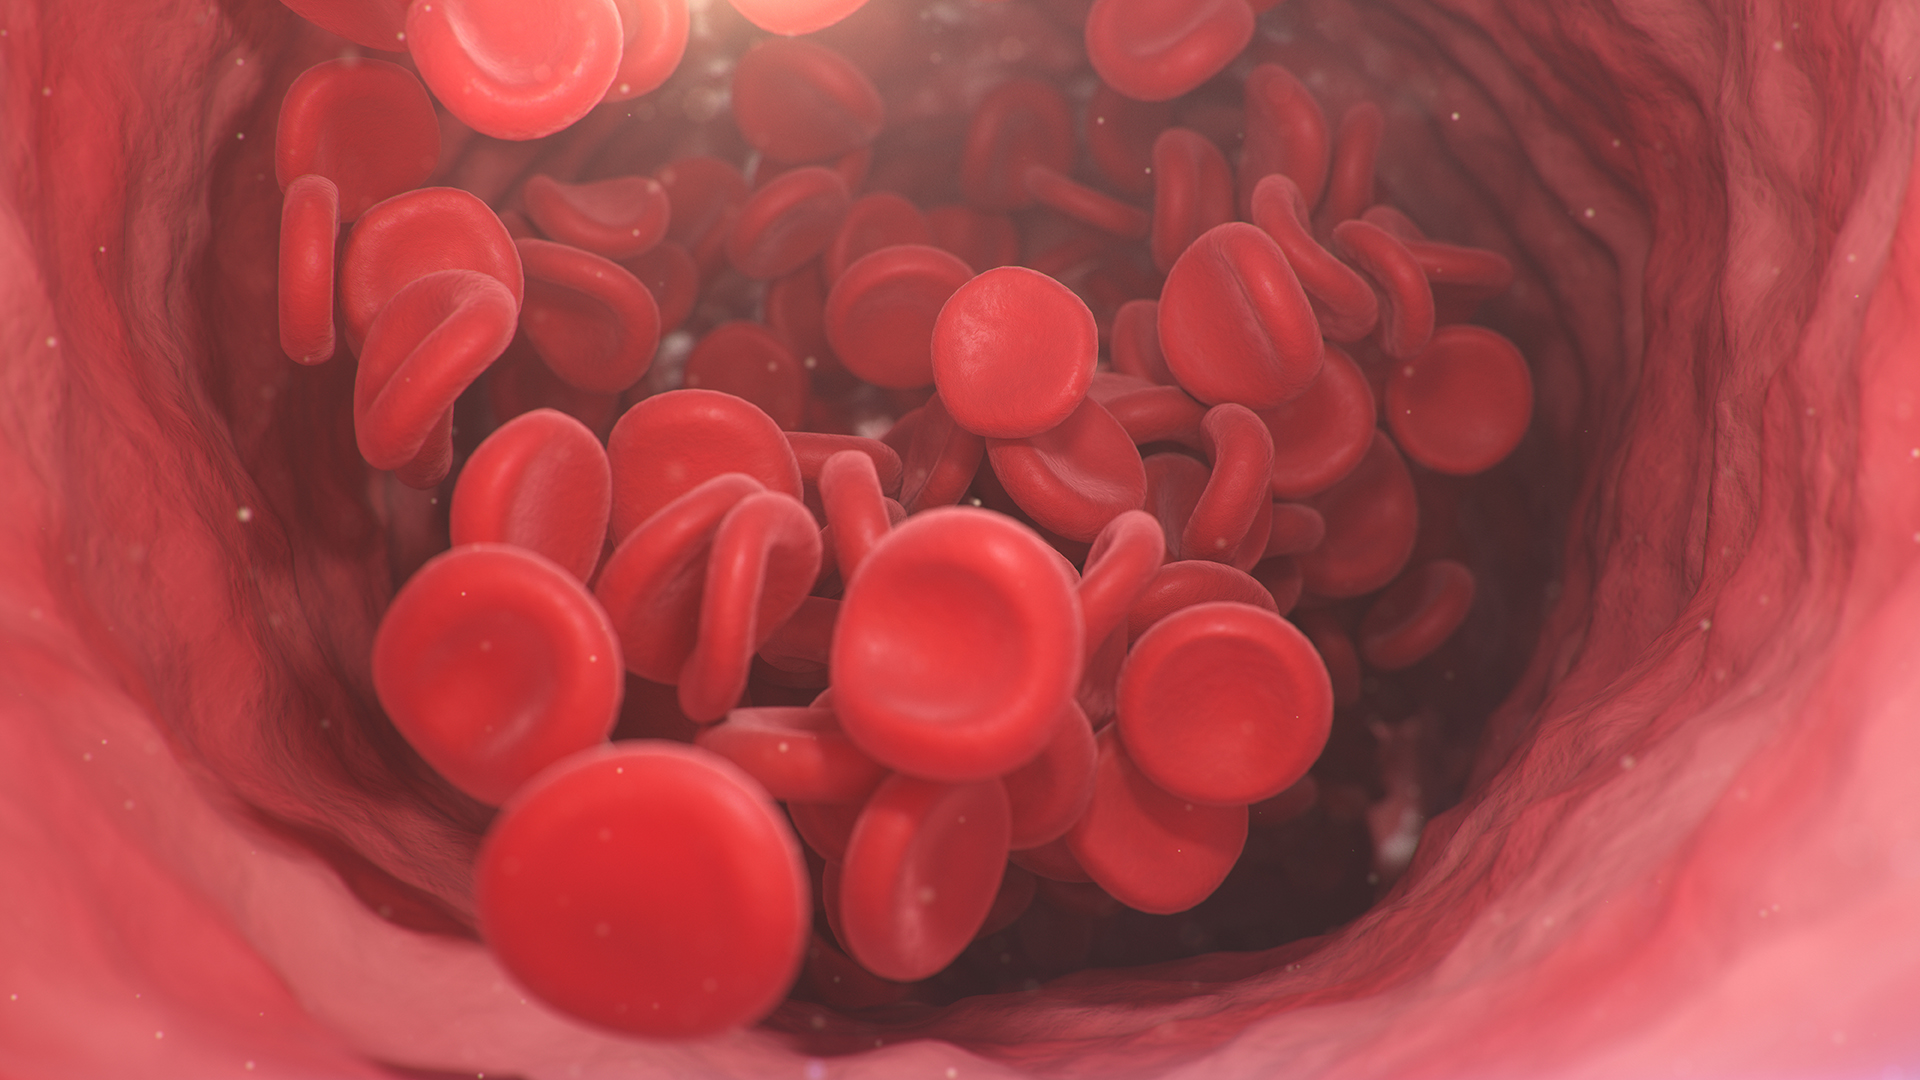 Человек производит около 2,4 миллиона красных кровяных телец в секунду